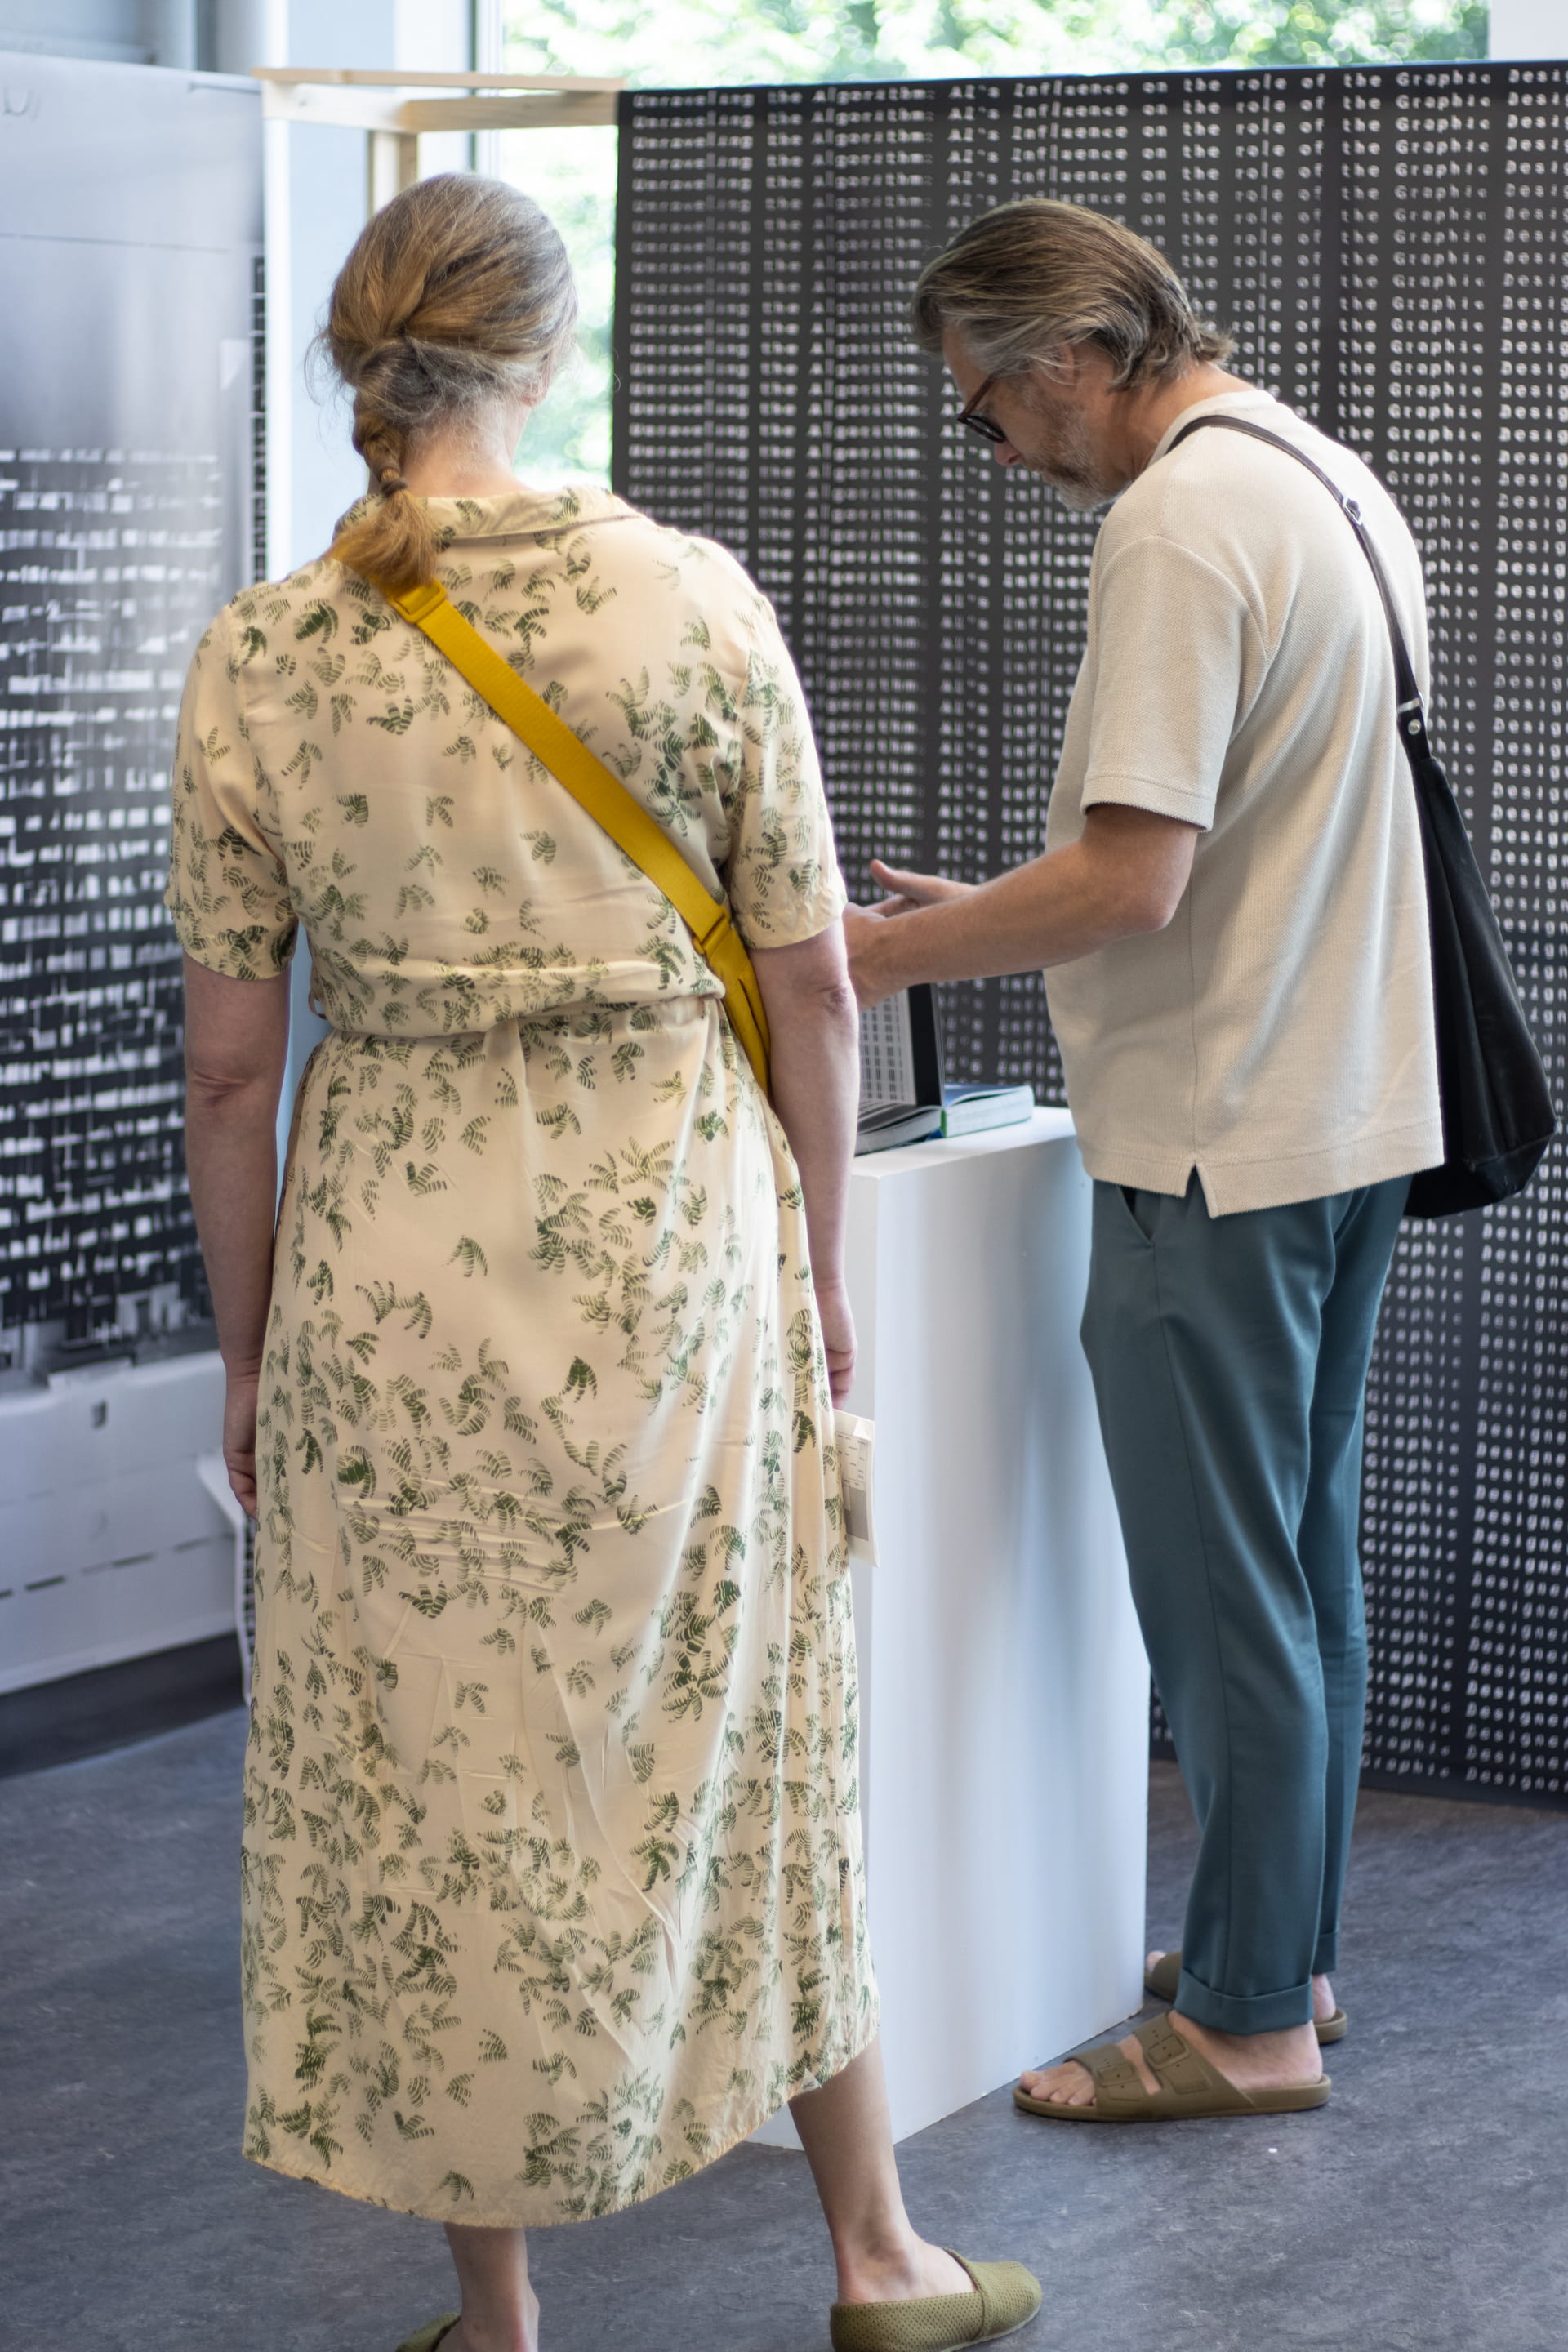 Mensen kijkend naar het boek Unraveling the Algorithm tijdens de expositie.